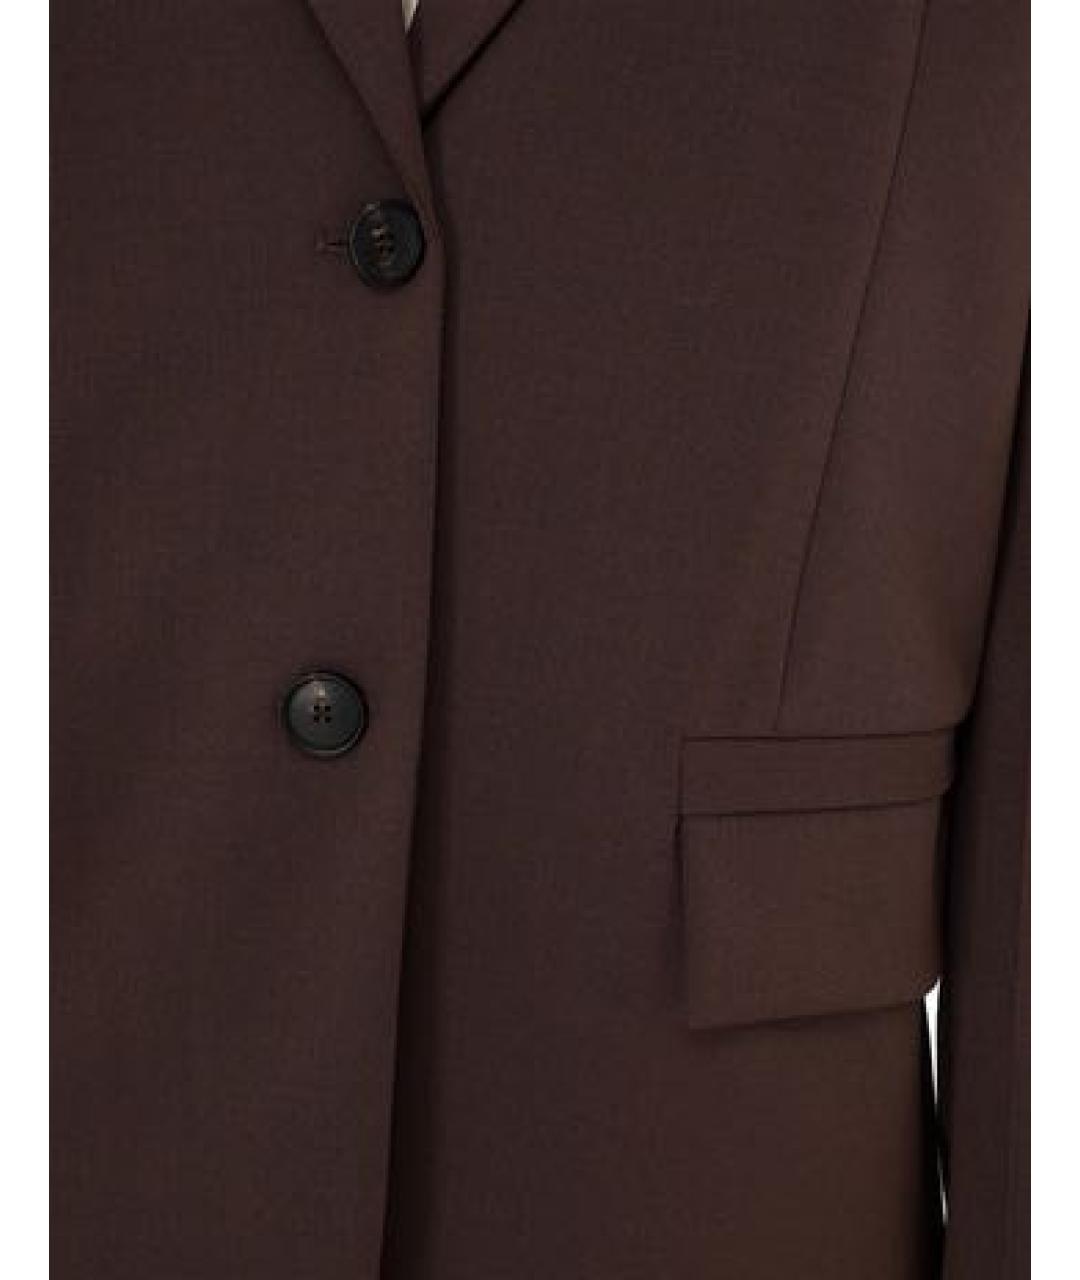 TELA Коричневый шерстяной жакет/пиджак, фото 4